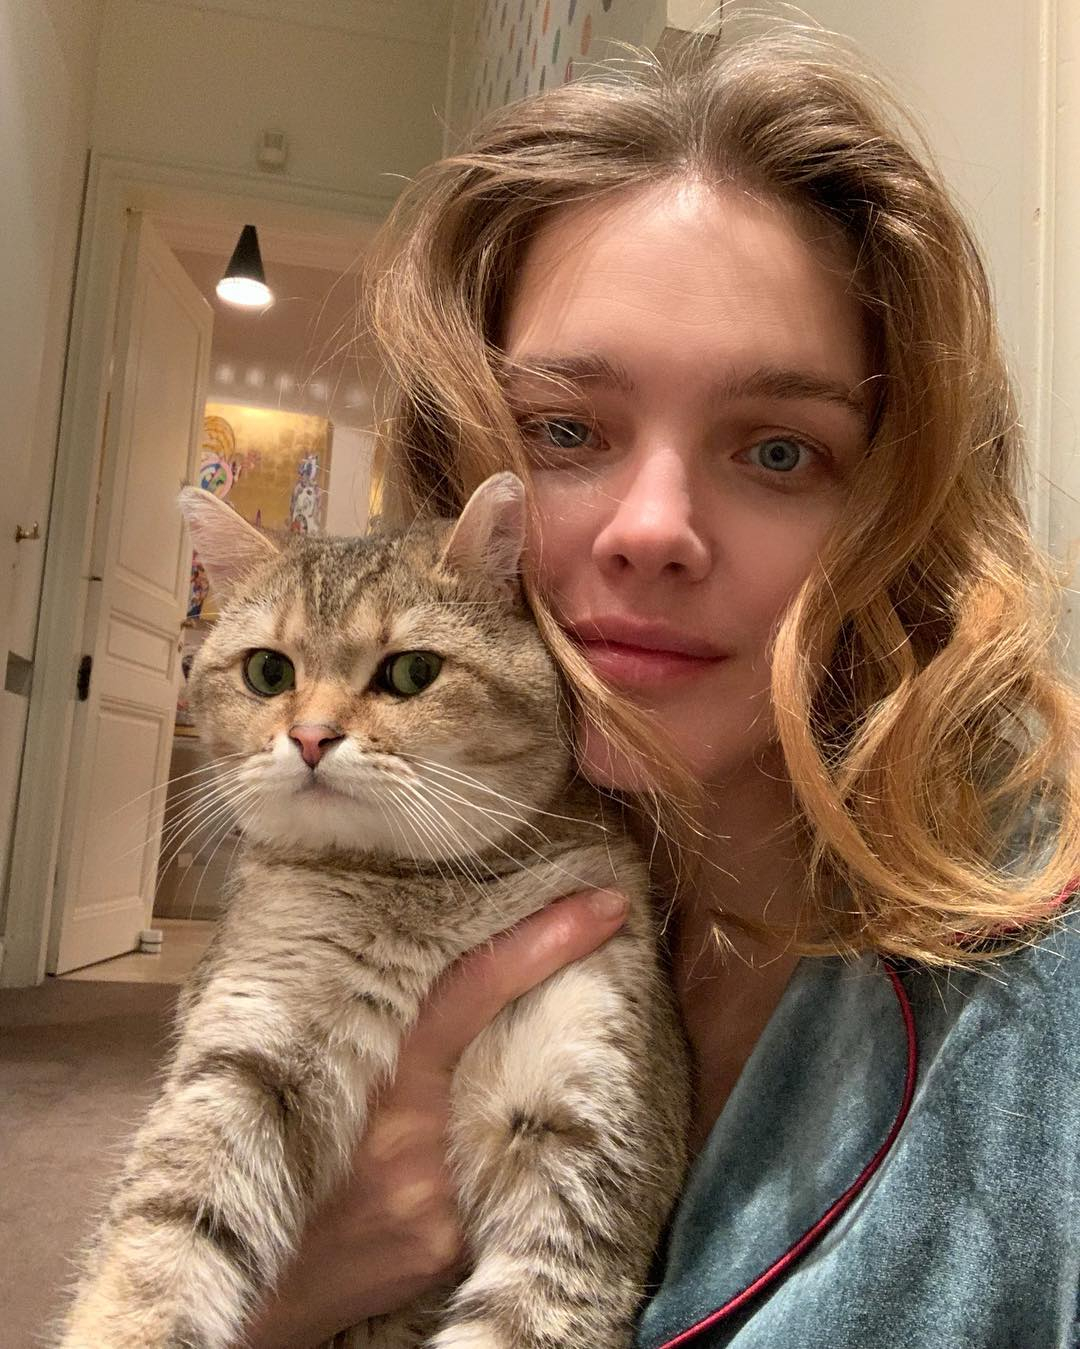 Модель Наталья Водянова запустила необычный флешмоб в Instagram